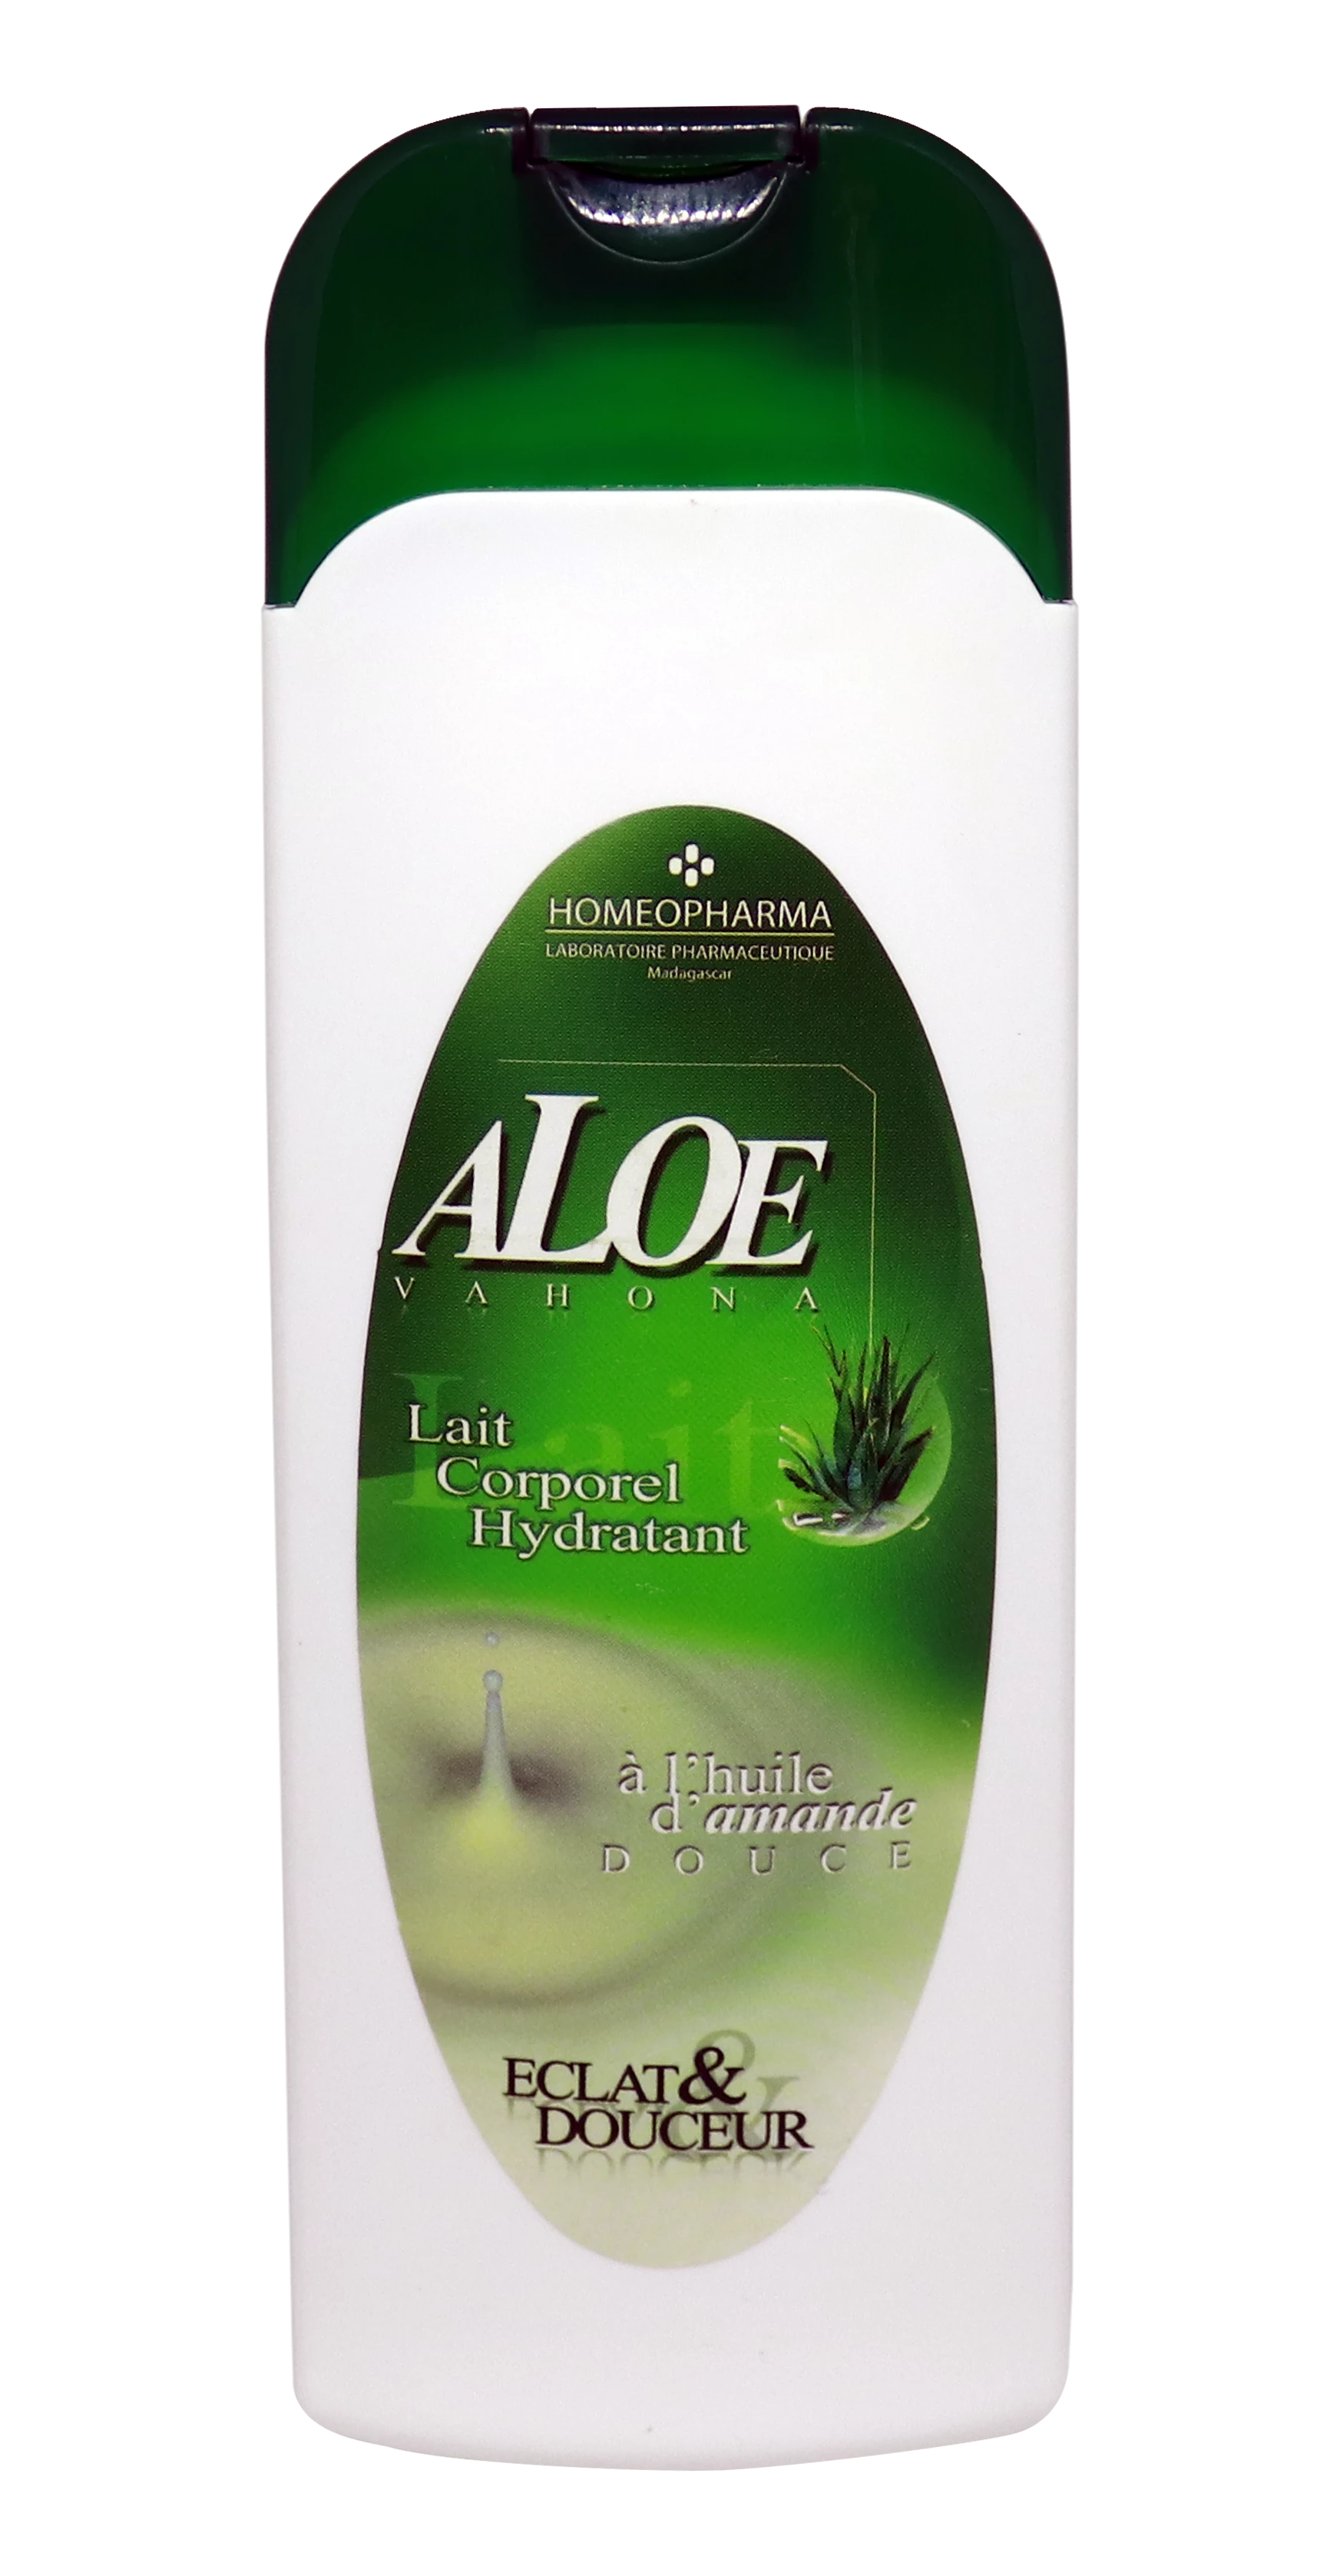 Lait Hydratant Corporel Aloe/vahona 200 Ml - Homeopharma